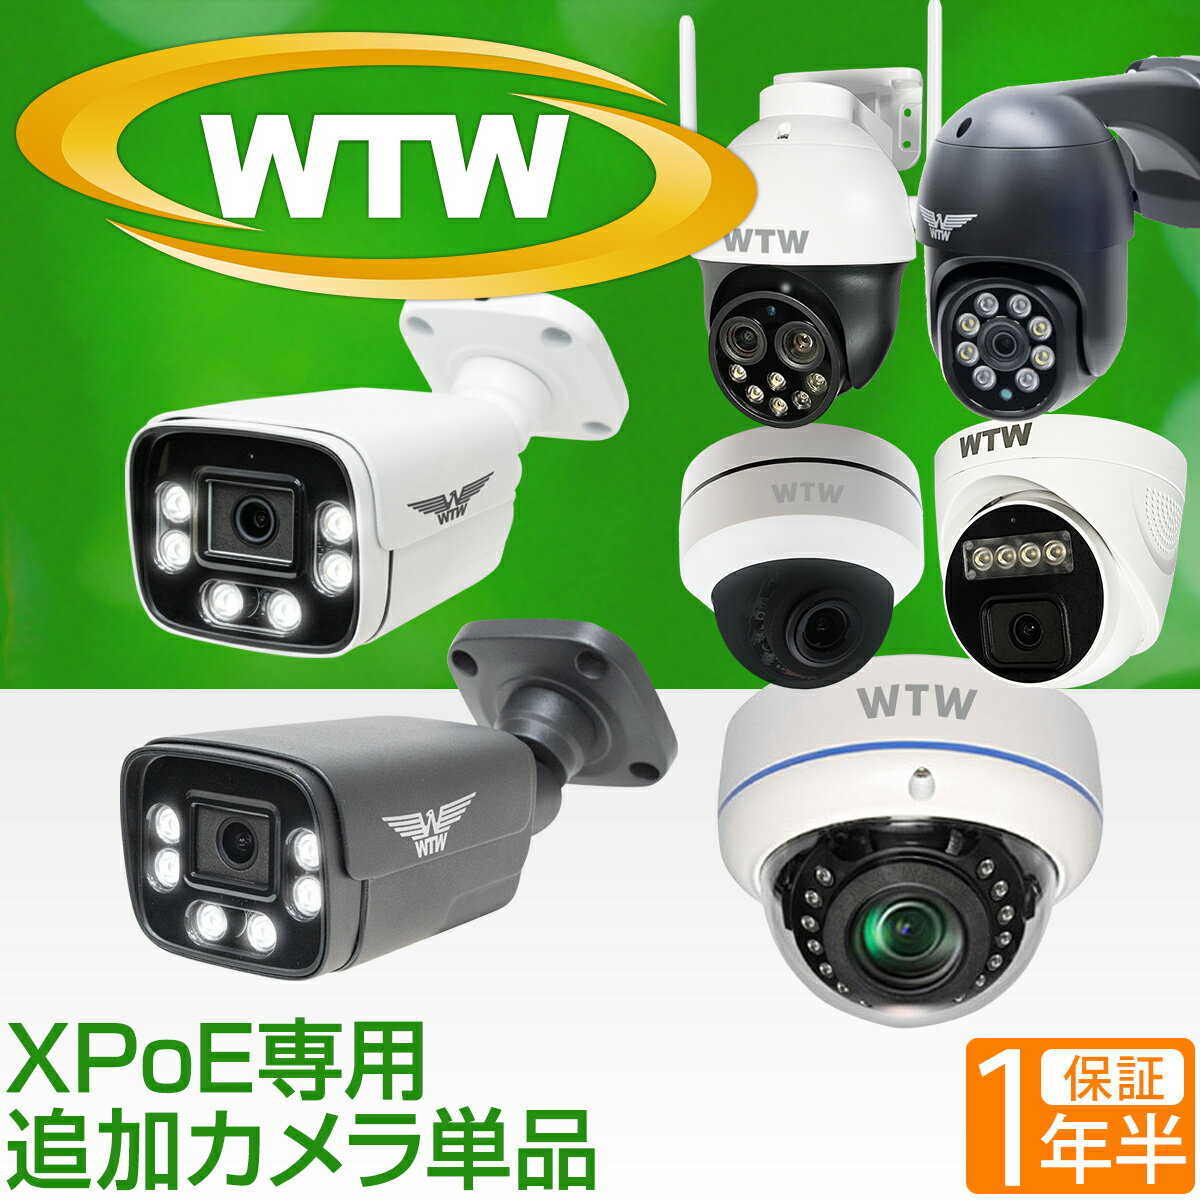 WTW 塚本無線 防犯カメラ poe 最大800万画素 屋外 家庭用 XPoEシリーズ WTW-XPR249GW33/WTW-XPR2319GAB/WTW-XPDR249GW33 等【このカメラはXPoE追加用カメラです 】 PoEカメラ単品X EAGLE